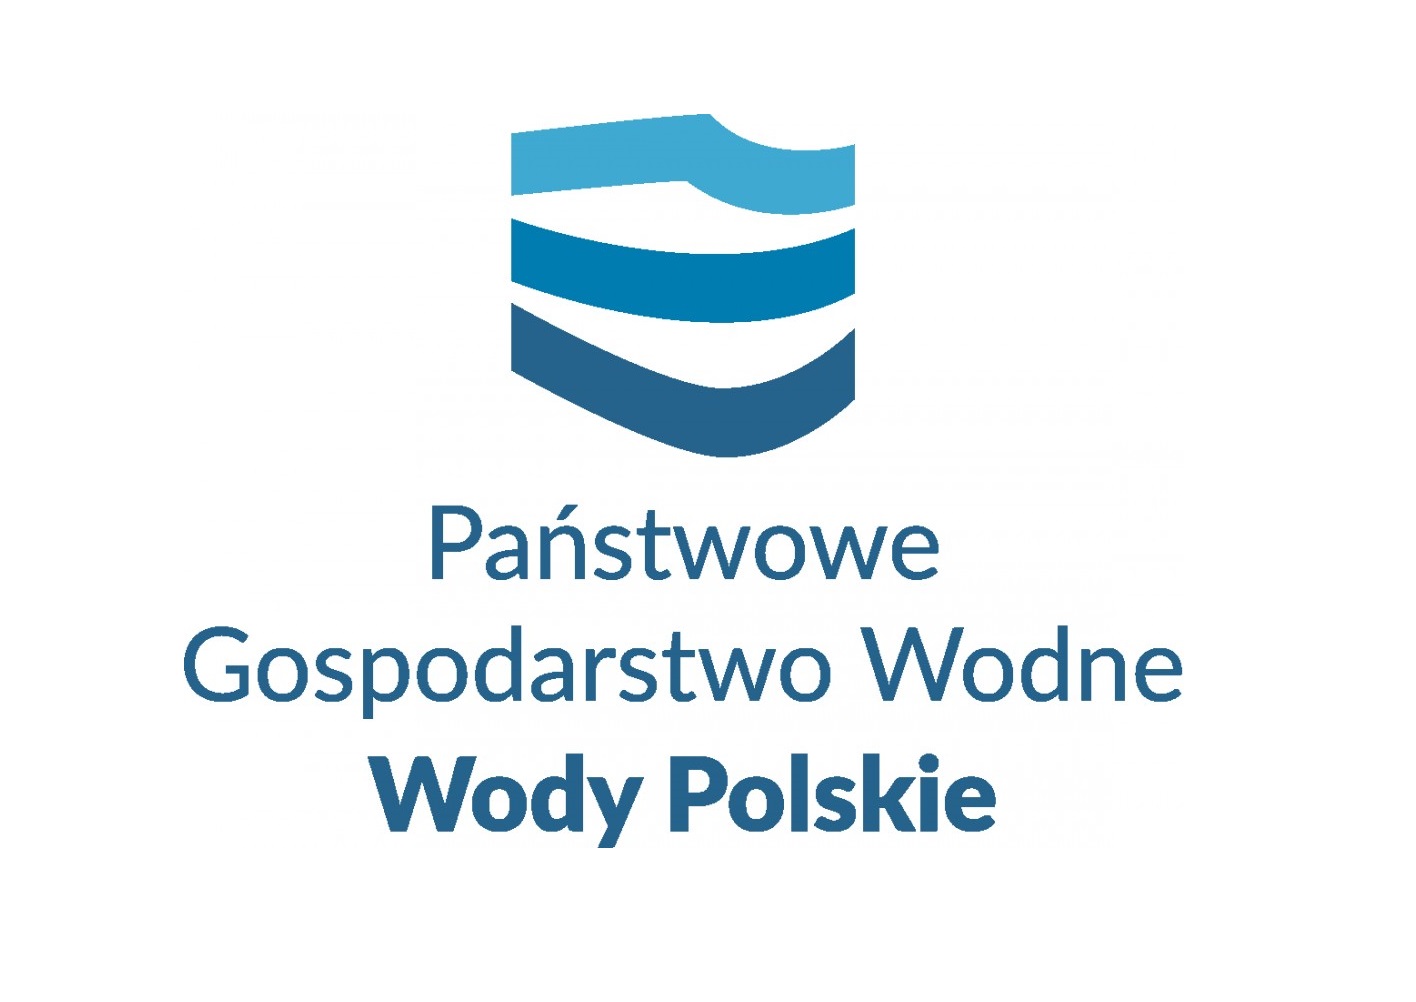 Wody Polskie